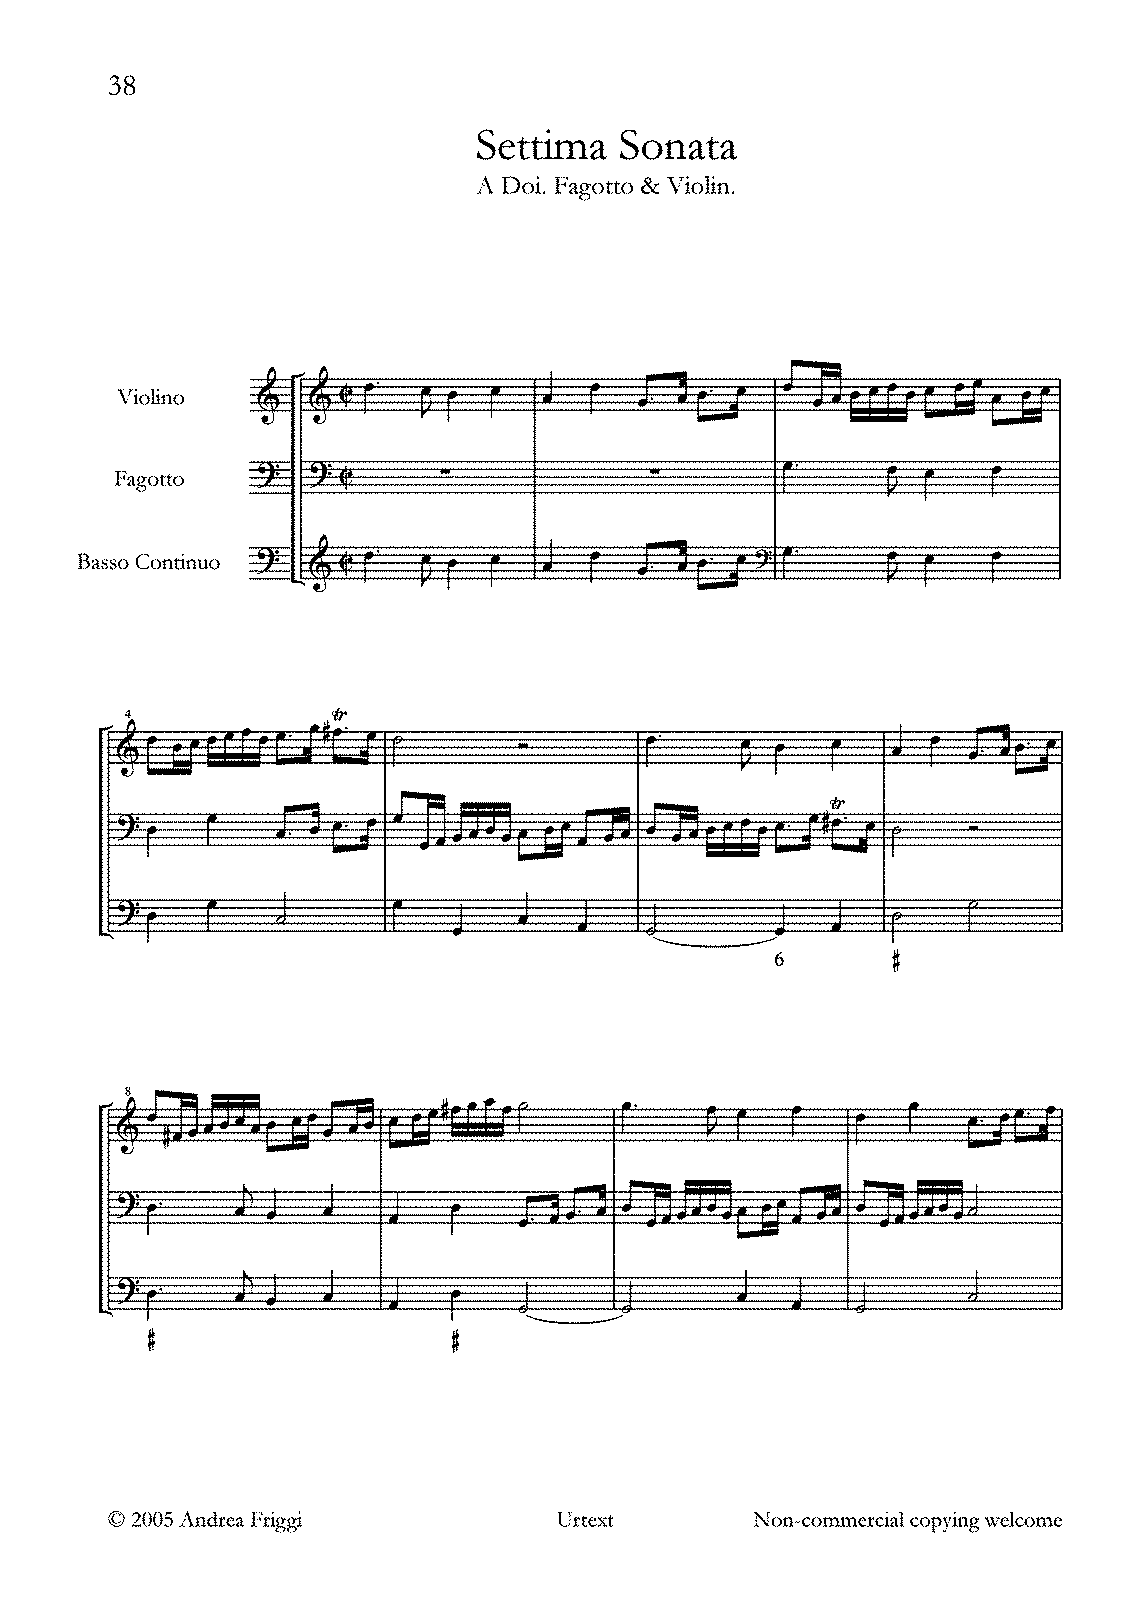 Sonata No.7 (Castello, Dario) - IMSLP